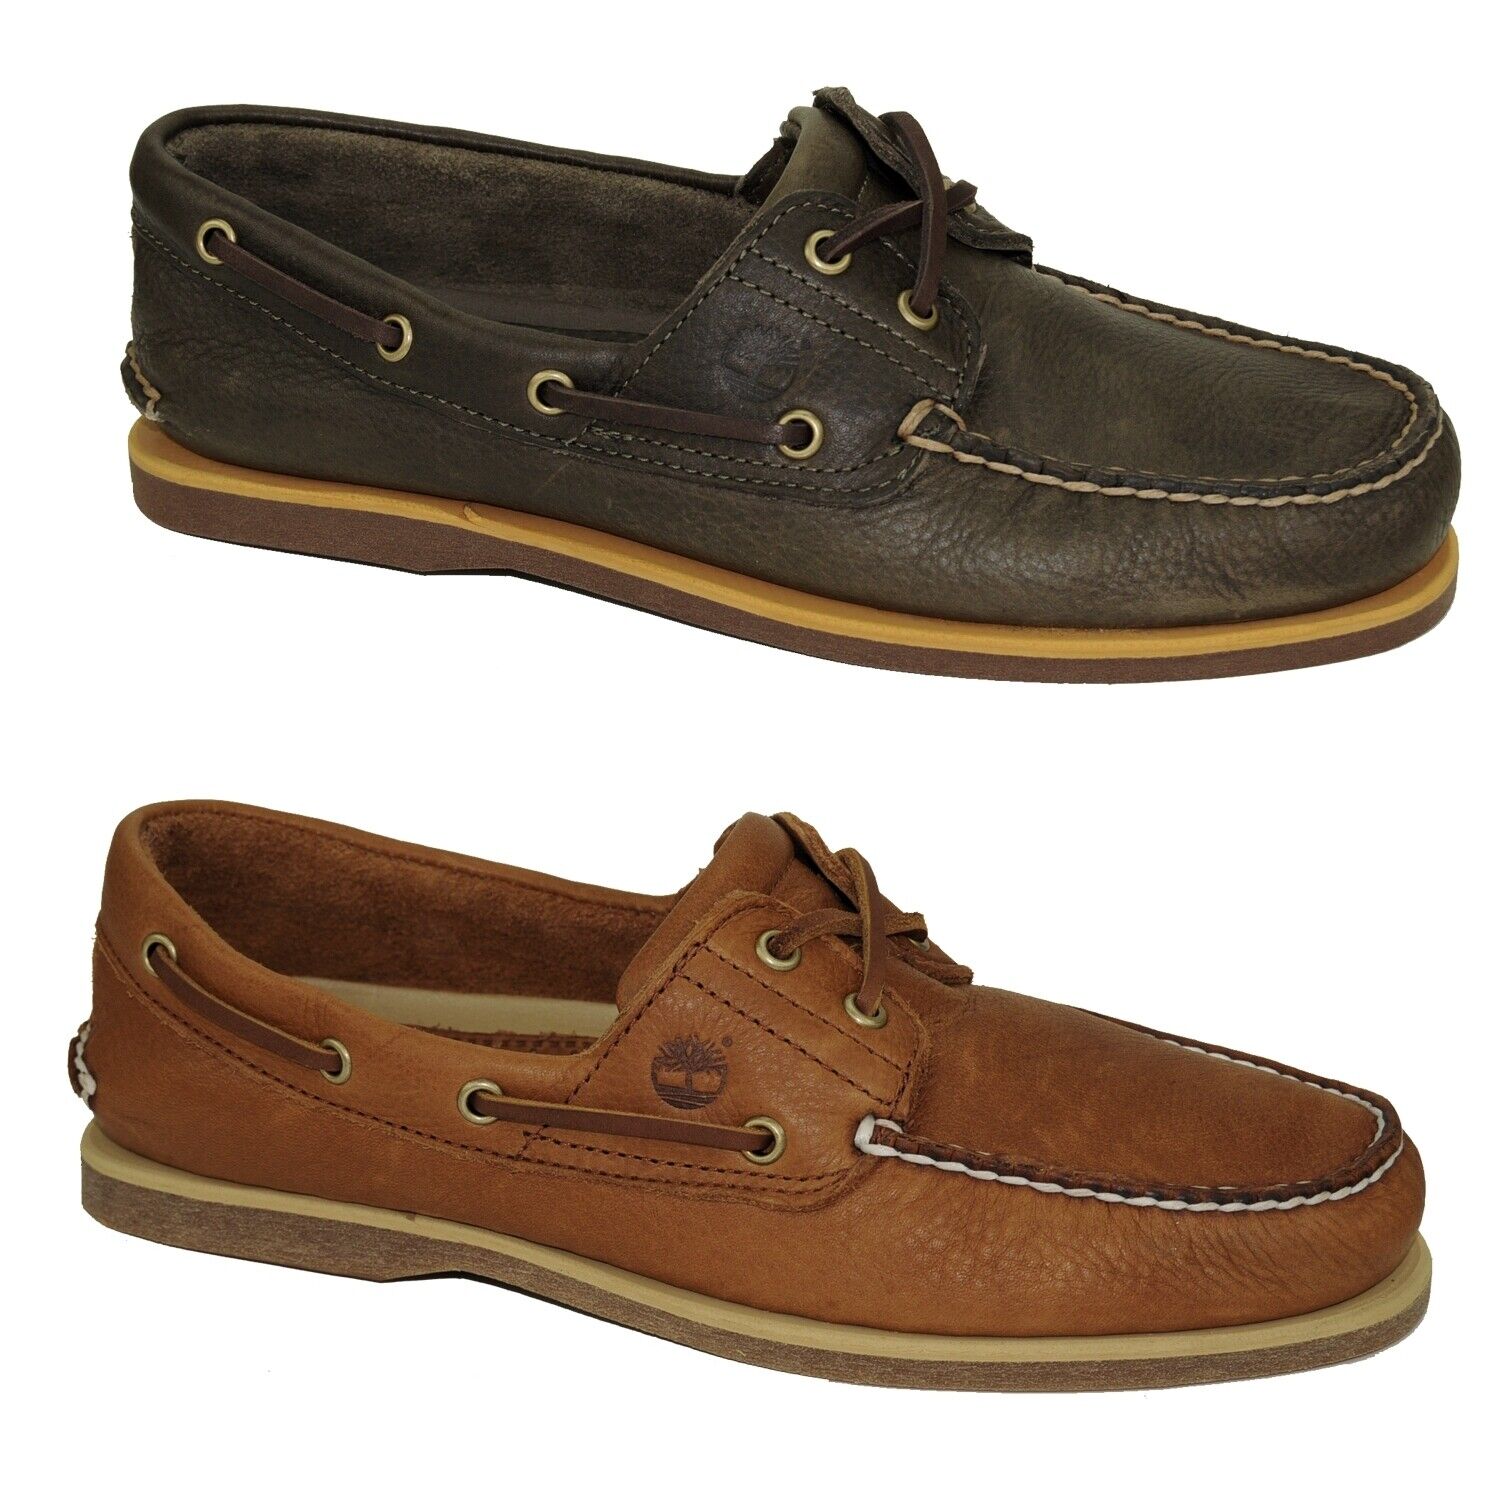 Timberland Classic Boat Shoes 2-Eye Deckschuhe Segelschuhe Herren Schuhe Modell- Farbe A2AFC - Olive Schuhgröße EUR 42 US 8,5